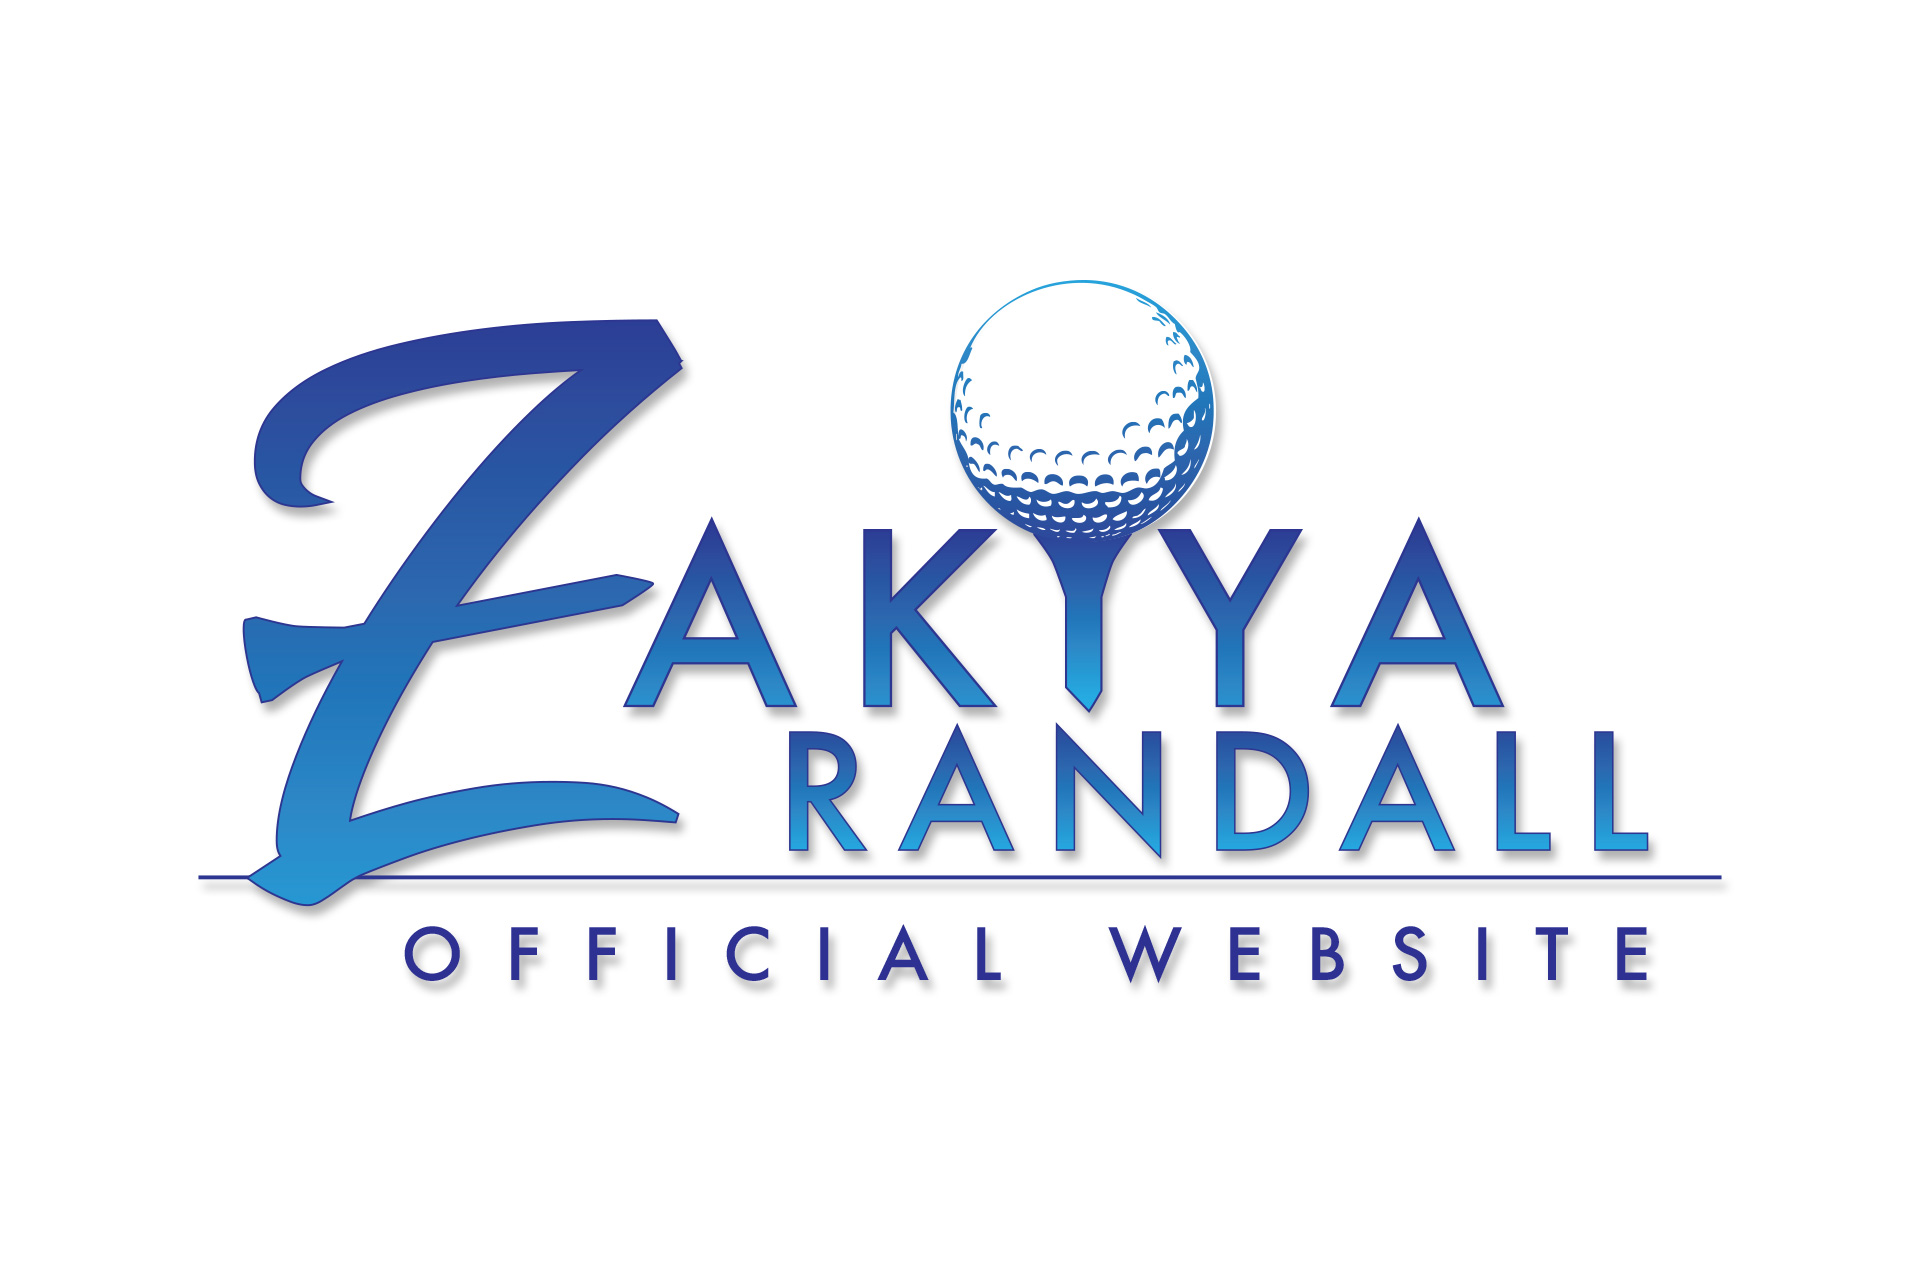 Zakiya Randall (Pro Golfer)